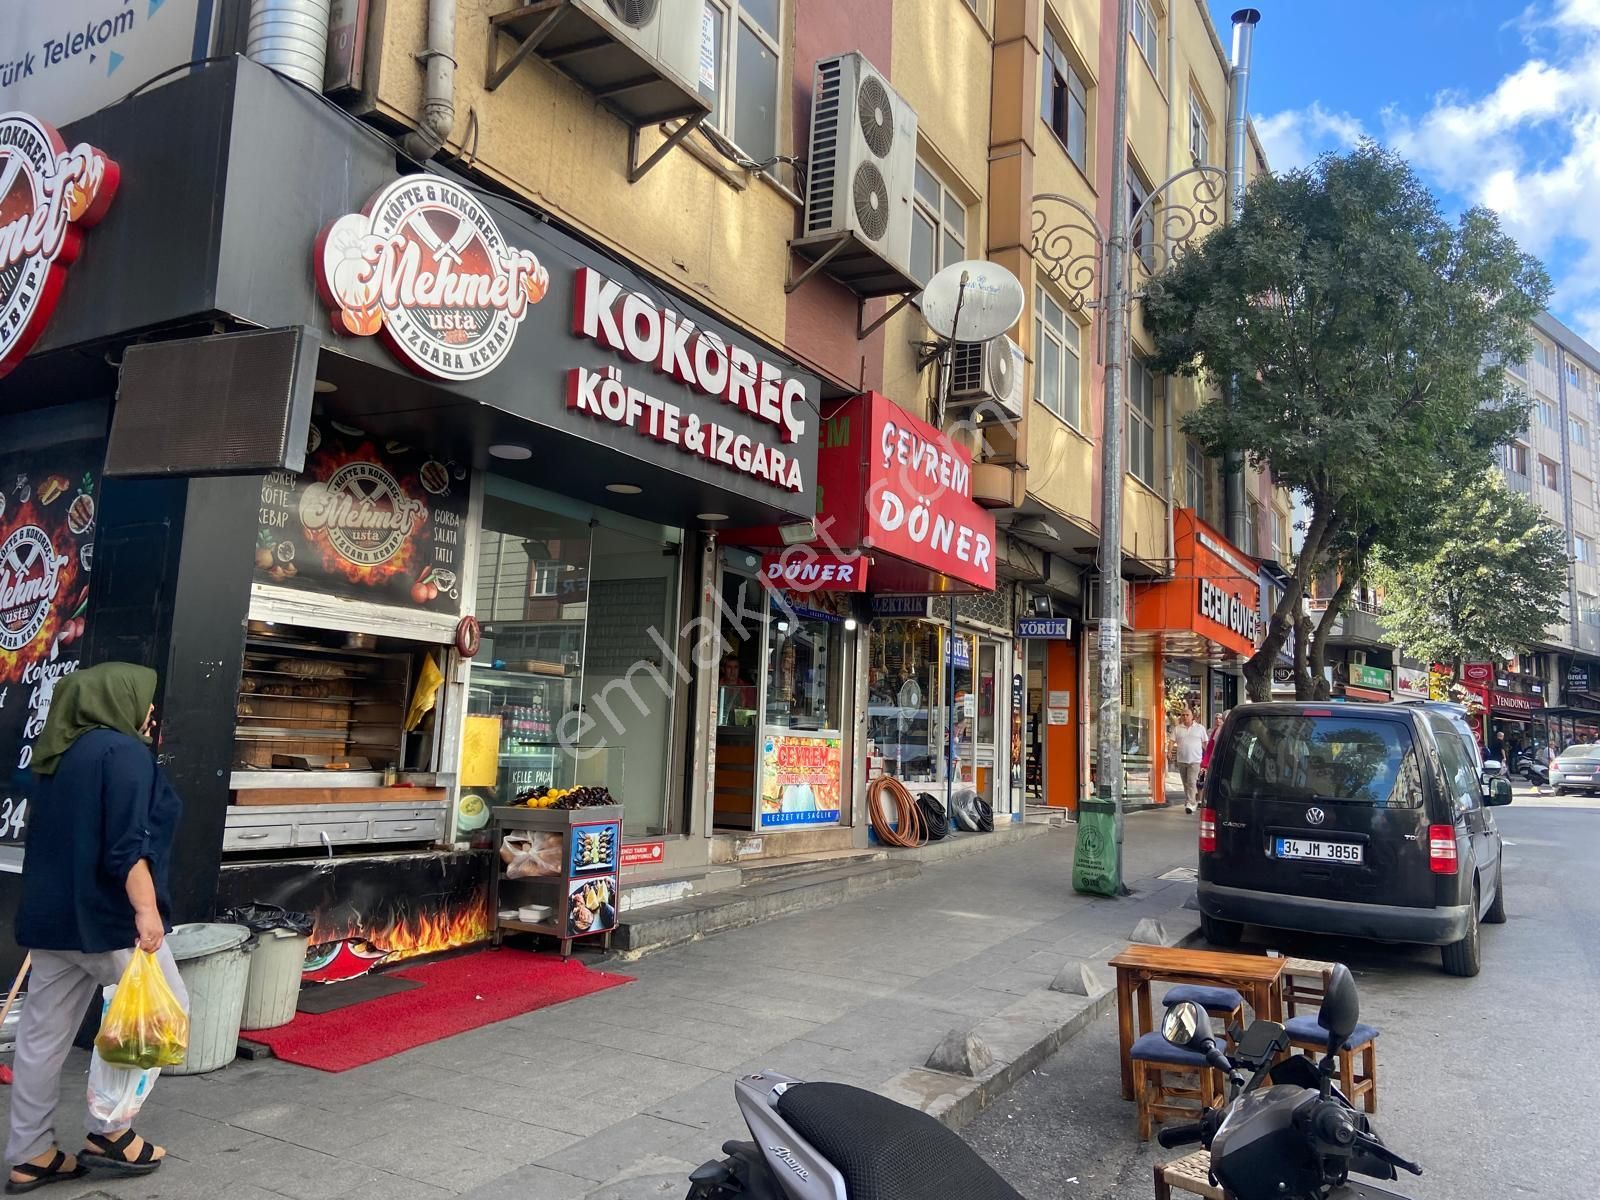 İstanbul Gaziosmanpaşa Satılık Dükkan & Mağaza serkan gayrimenkuldan gaziosmanpaşa yıldız tarabya cadde üzeri 90 metre dükkan iskanlı kıredili